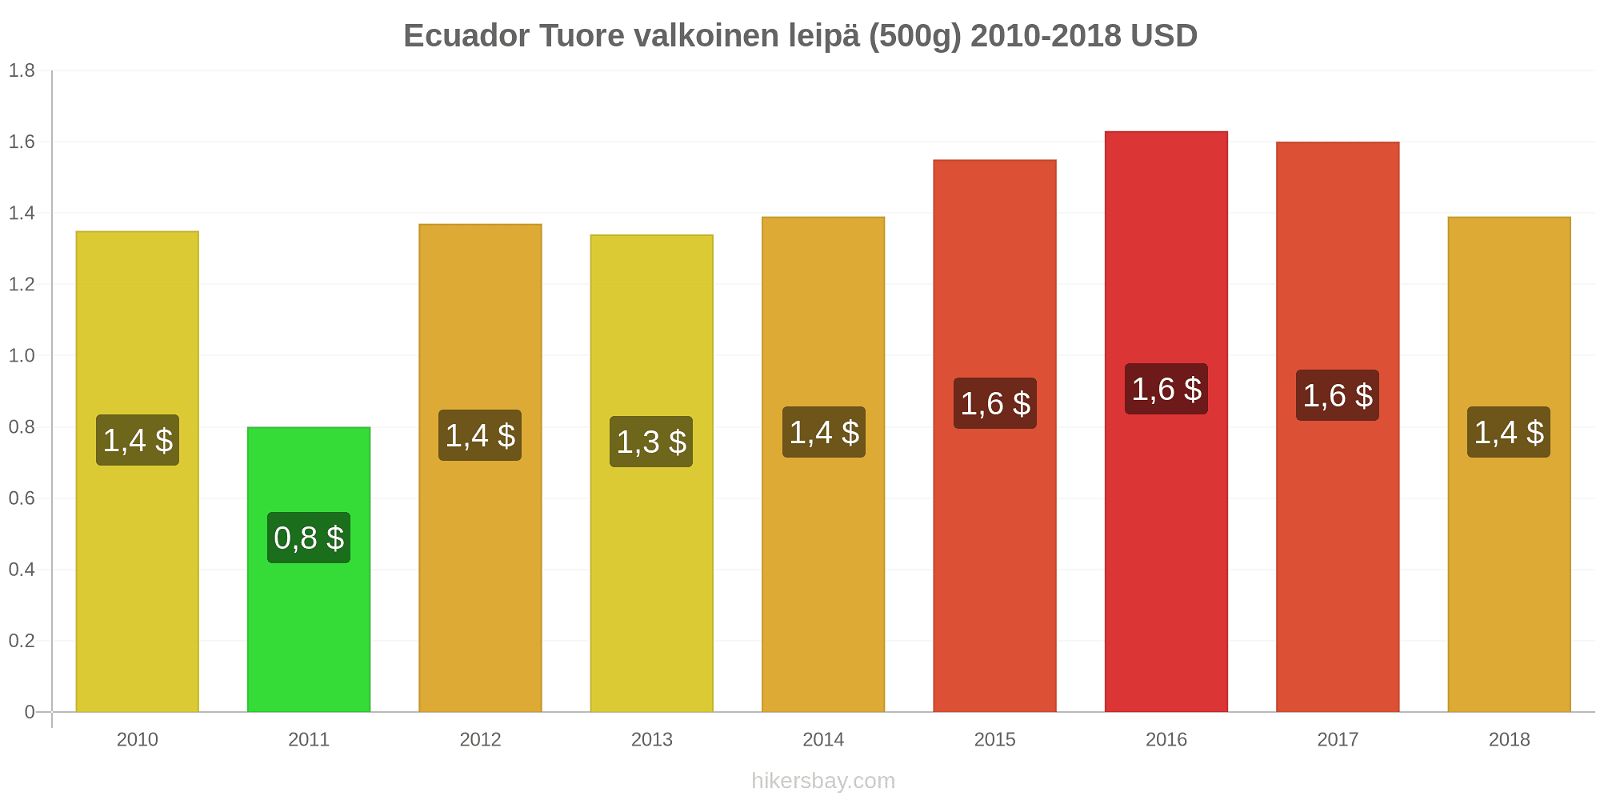 Ecuador hintojen muutokset Tuore valkoinen leipä (500g) hikersbay.com